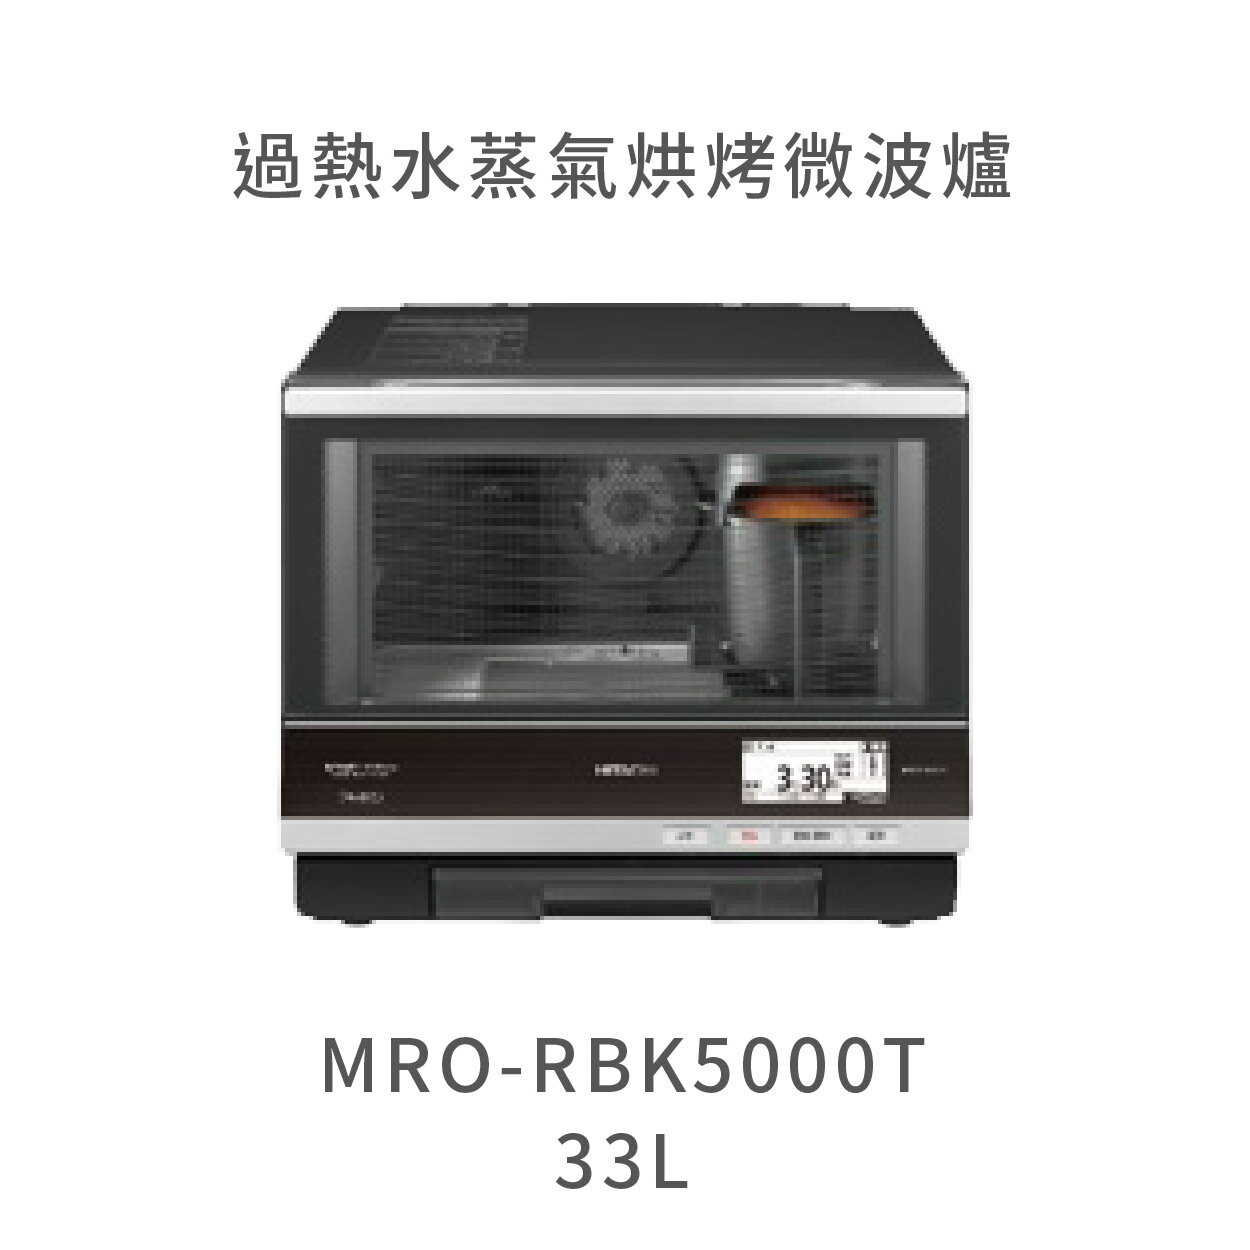 【點數10%回饋】日立HITACHI MRORBK5000T 33L過熱水蒸氣烘烤微波爐